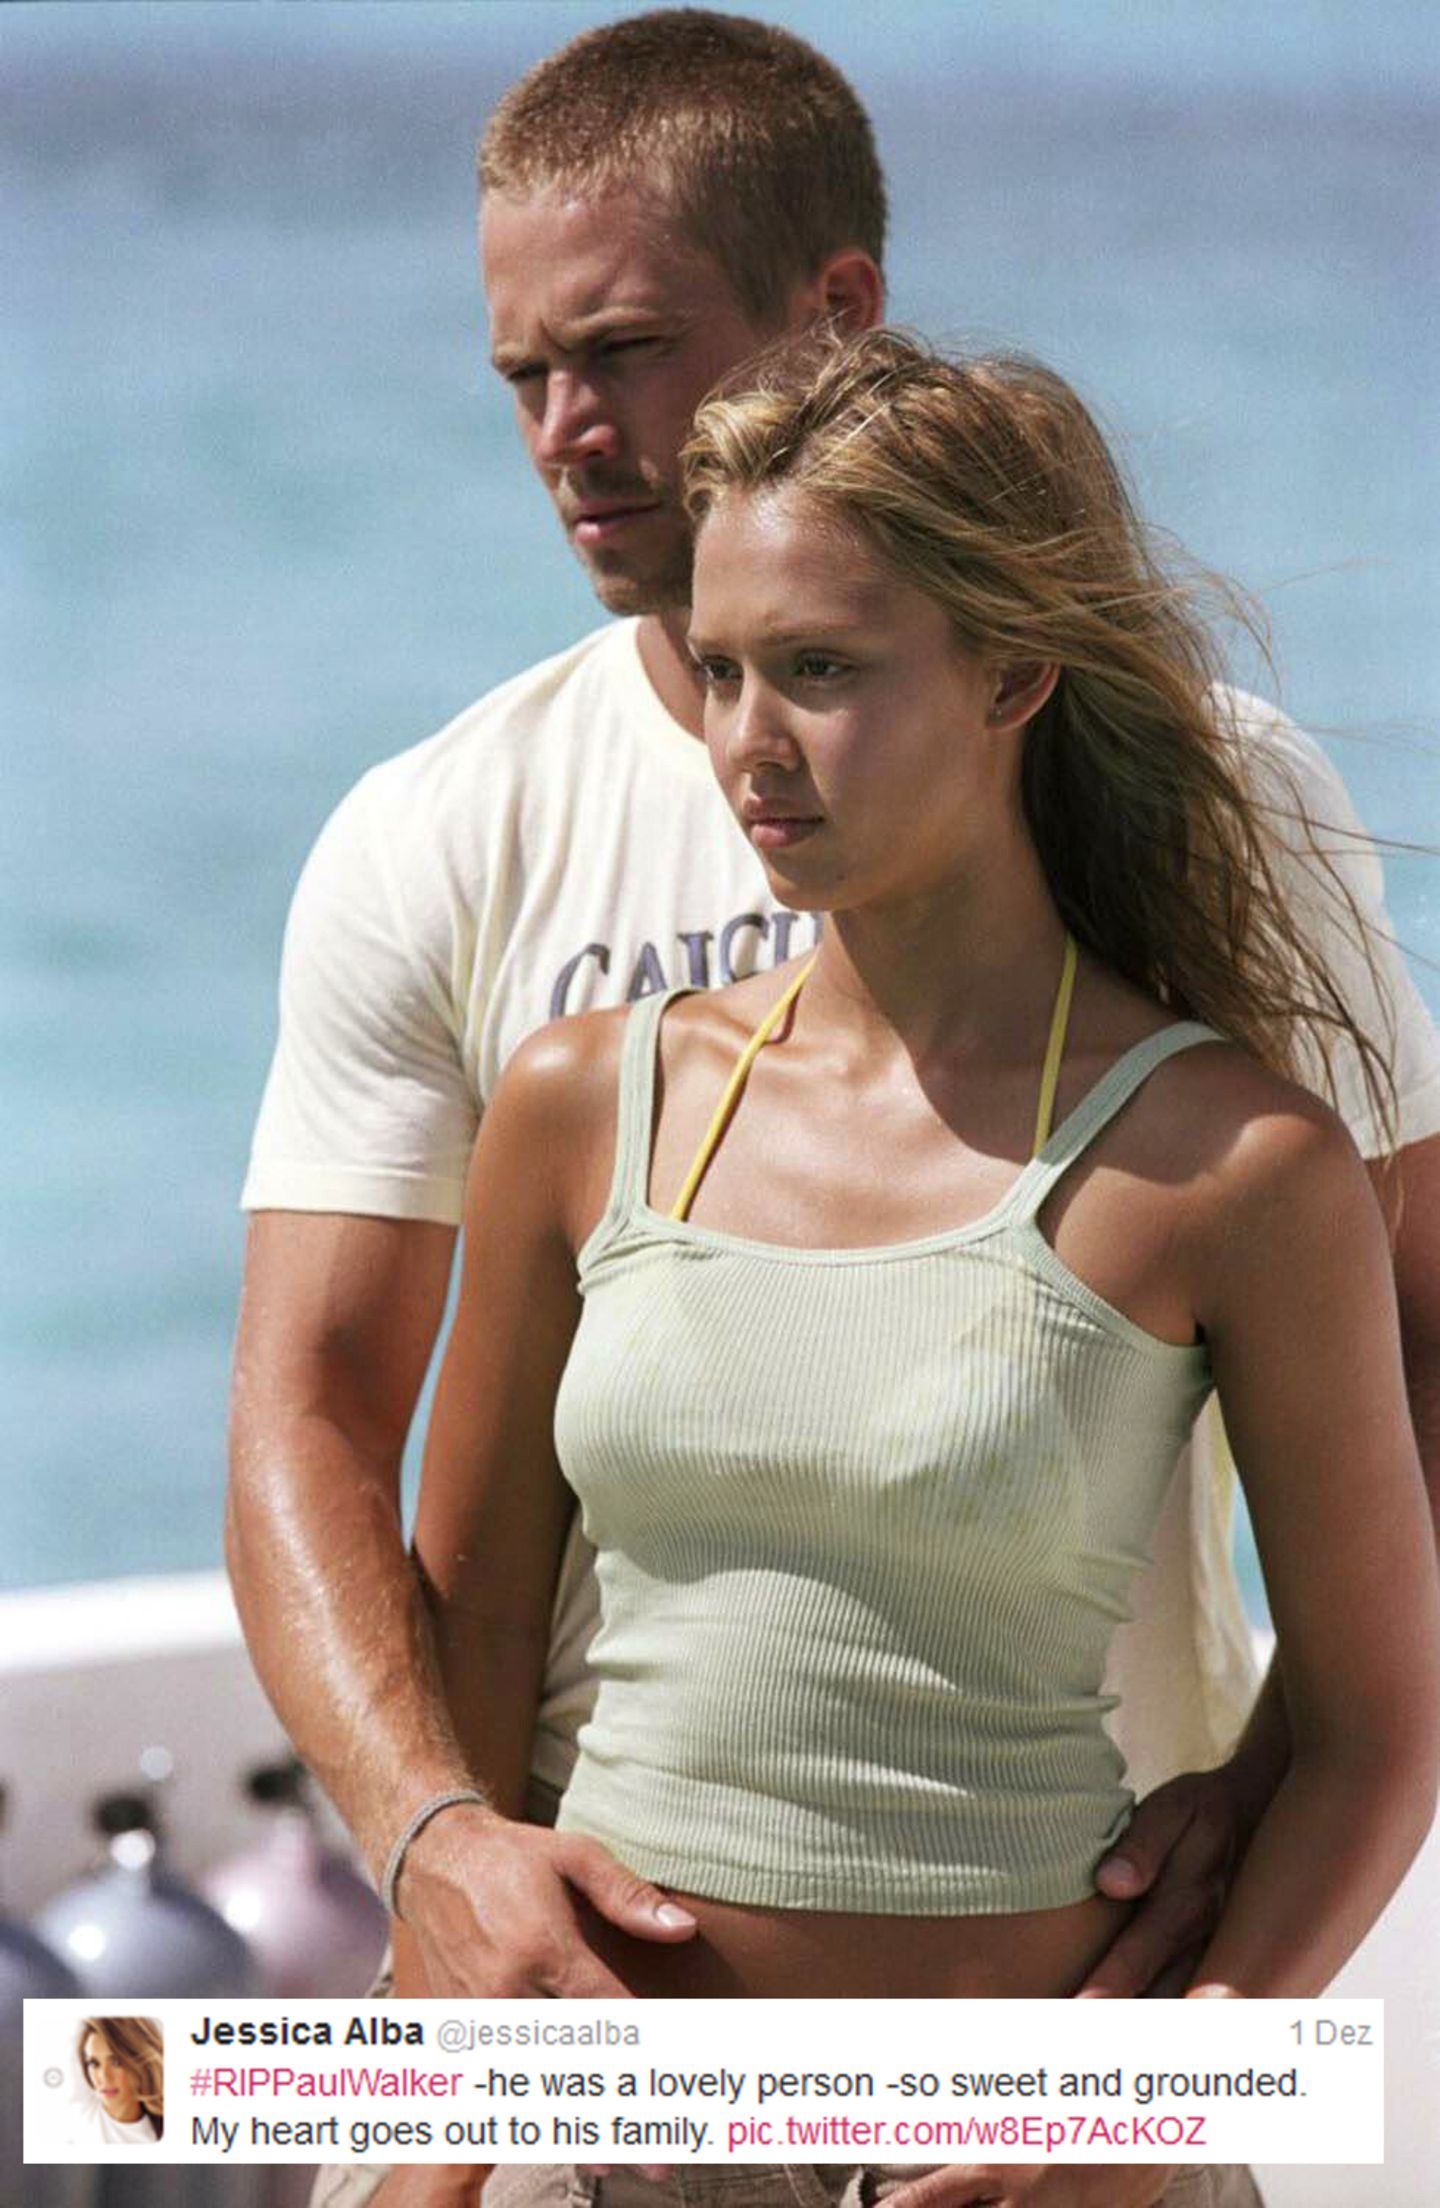 Jessica Alba  Jessica Alba und Paul Walker standen gemeinsam 2005 für den Film "Into the Blue" vor der Kamera. "Er war so ein liebevoller Mensch. So süß und bodenständig. Ich bin im Herzen bei seiner Familie", schreibt sie auf ihrem Twitterprofil.